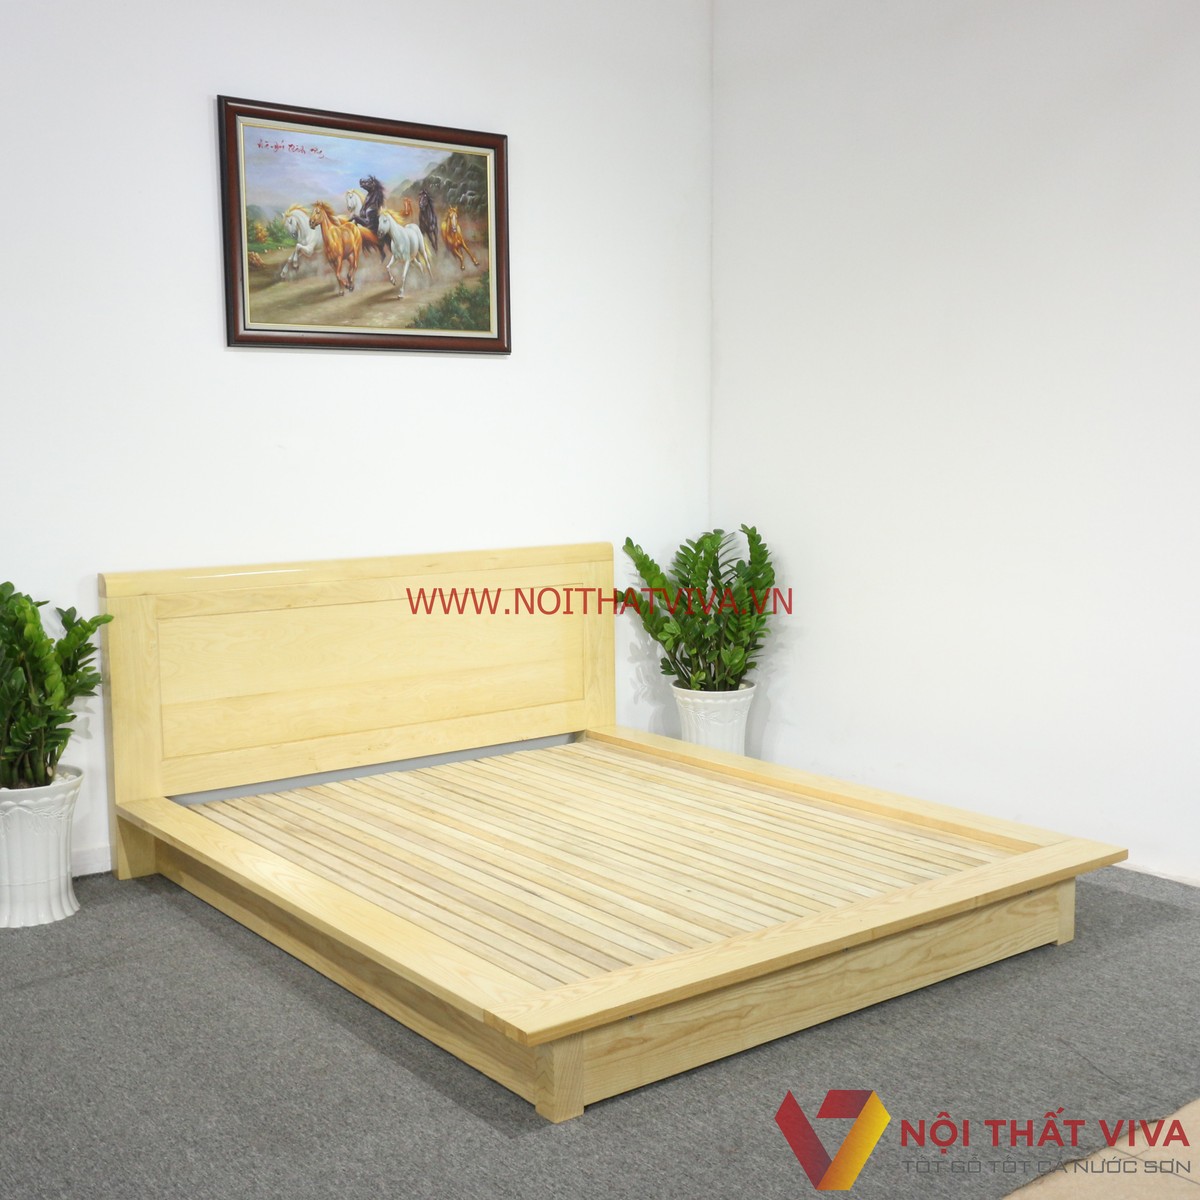 Tư vấn từ chuyên gia: Các mẫu giường ngủ gỗ sồi trắng hiện đại đẹp nhất xứng đáng để lựa chọn